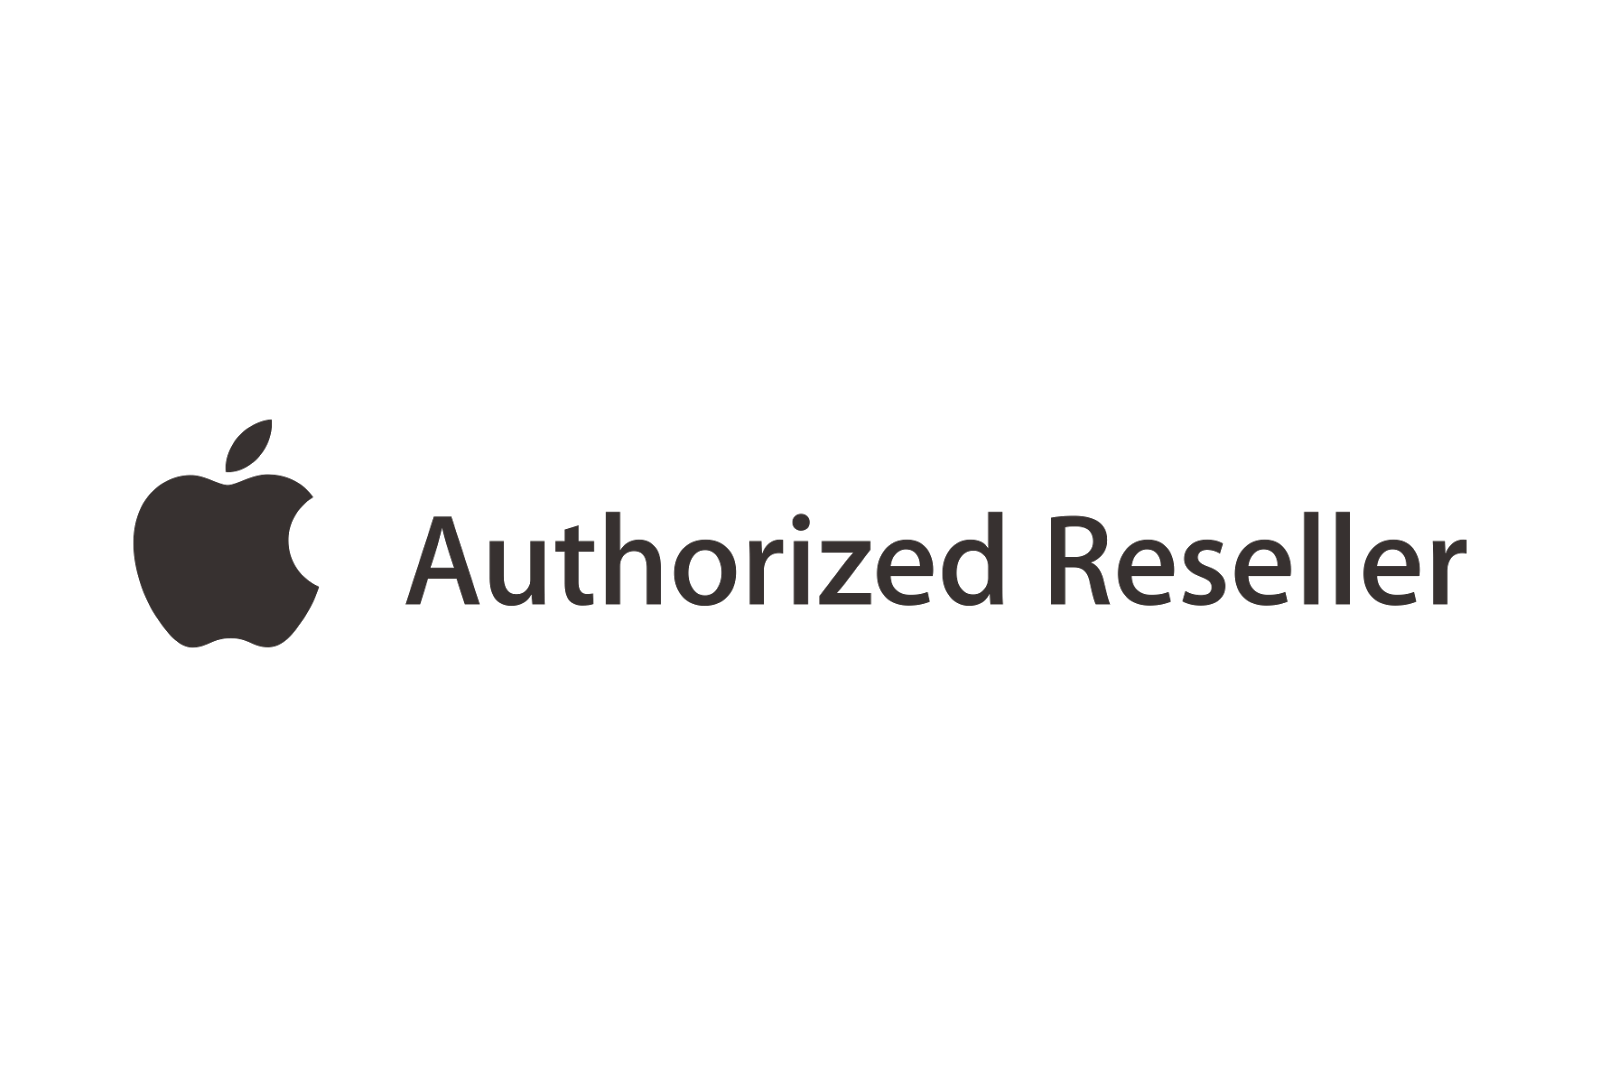 Apple Authorized Dealer Png Hdpng.com 1600 - Apple Authorized Dealer, Transparent background PNG HD thumbnail